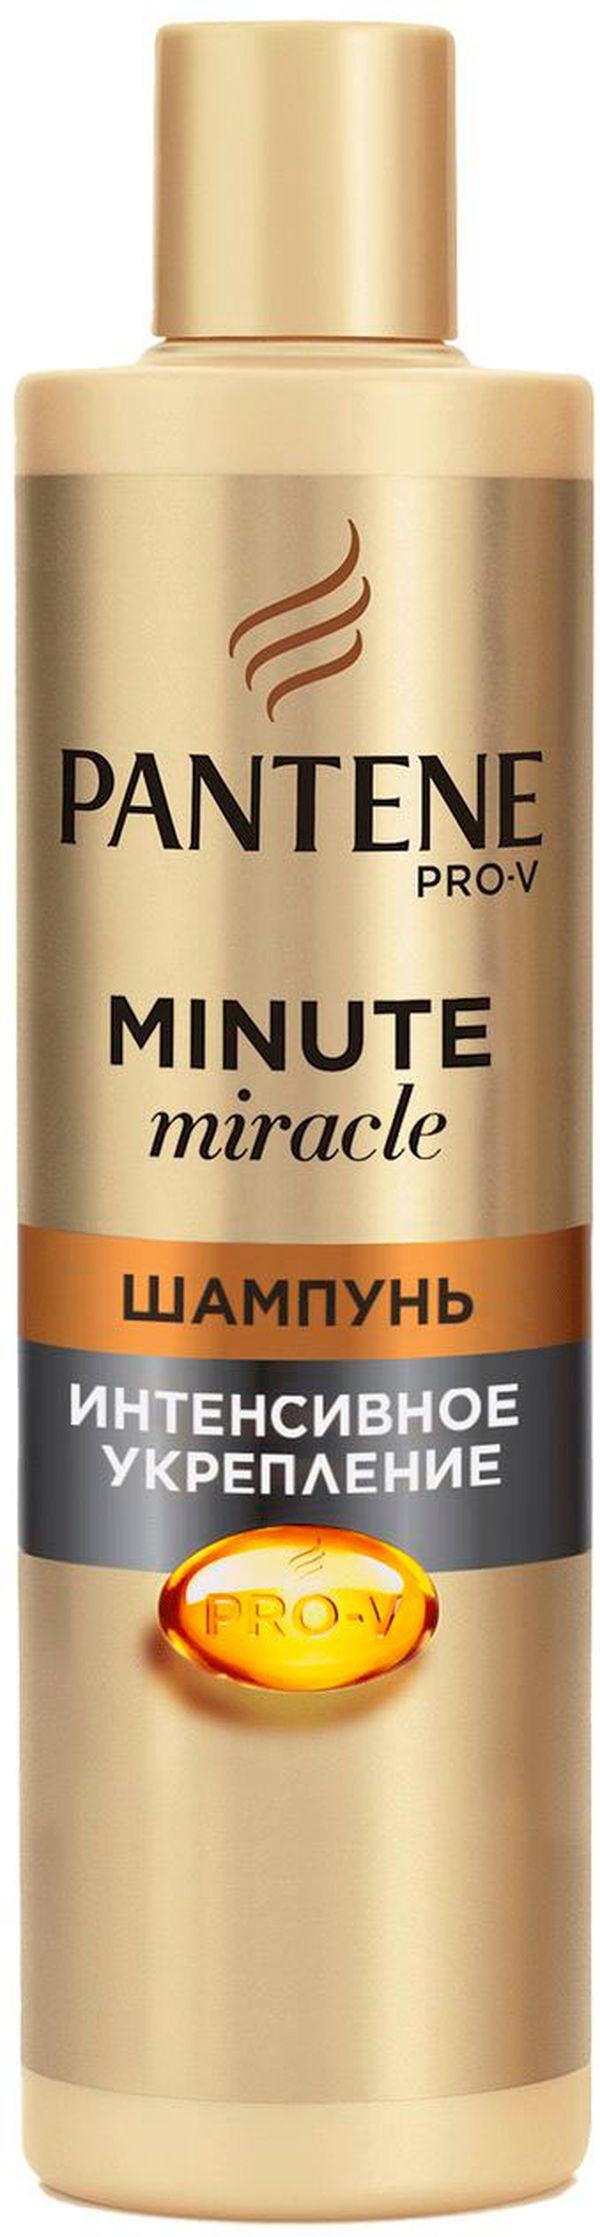 Шампунь для волос Pantene Minute Miracle интенсивное укрепление 270мл